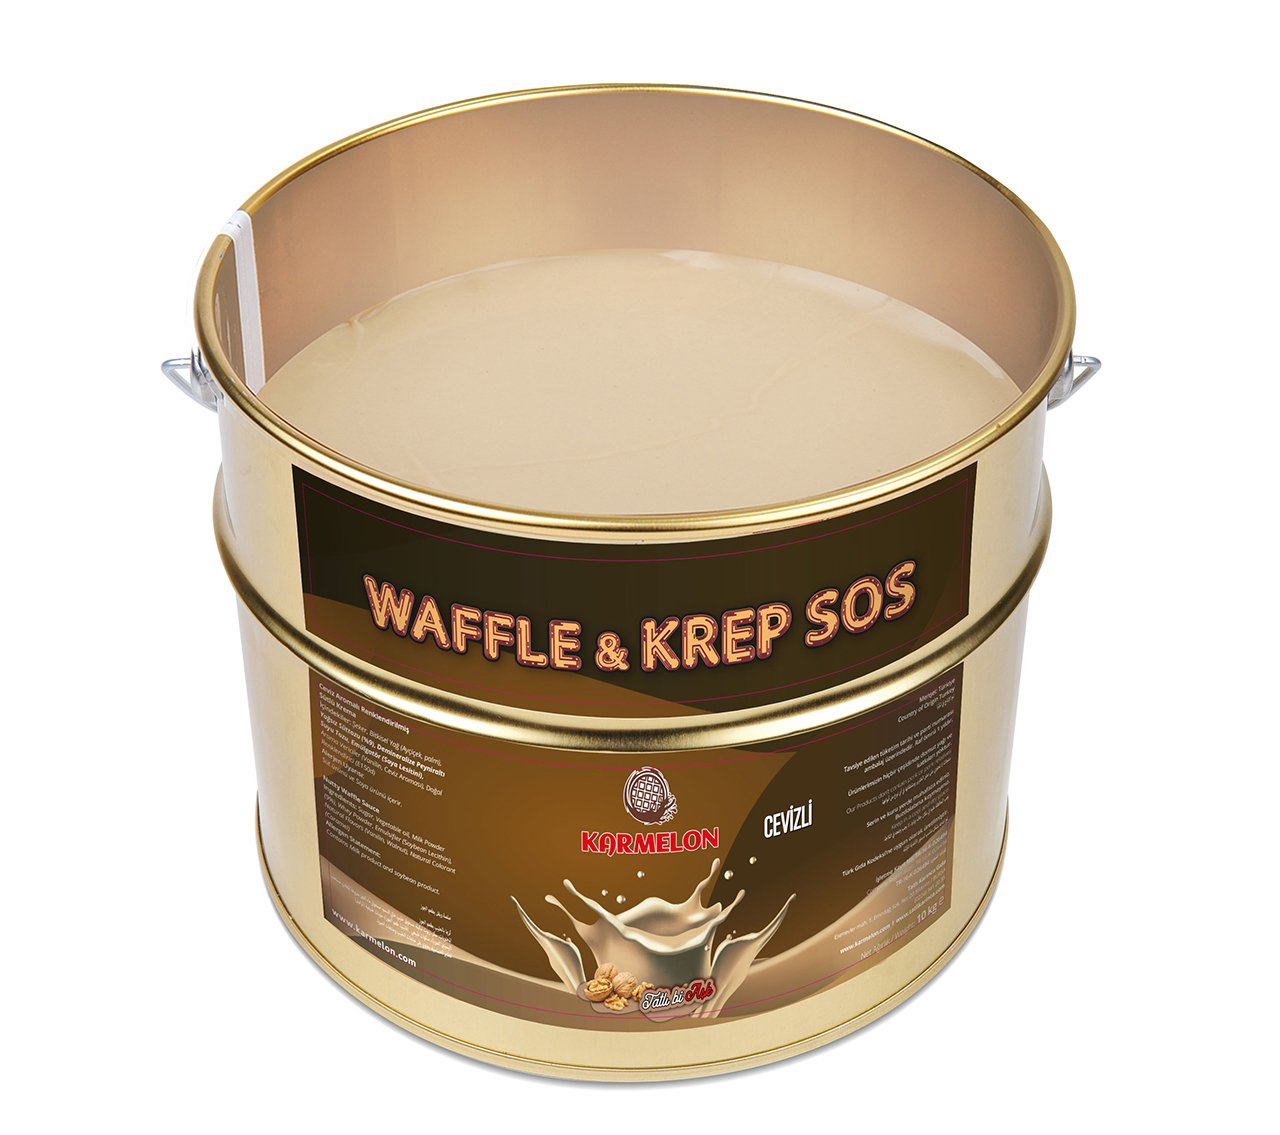 Cevizli Waffle Sos -6kg